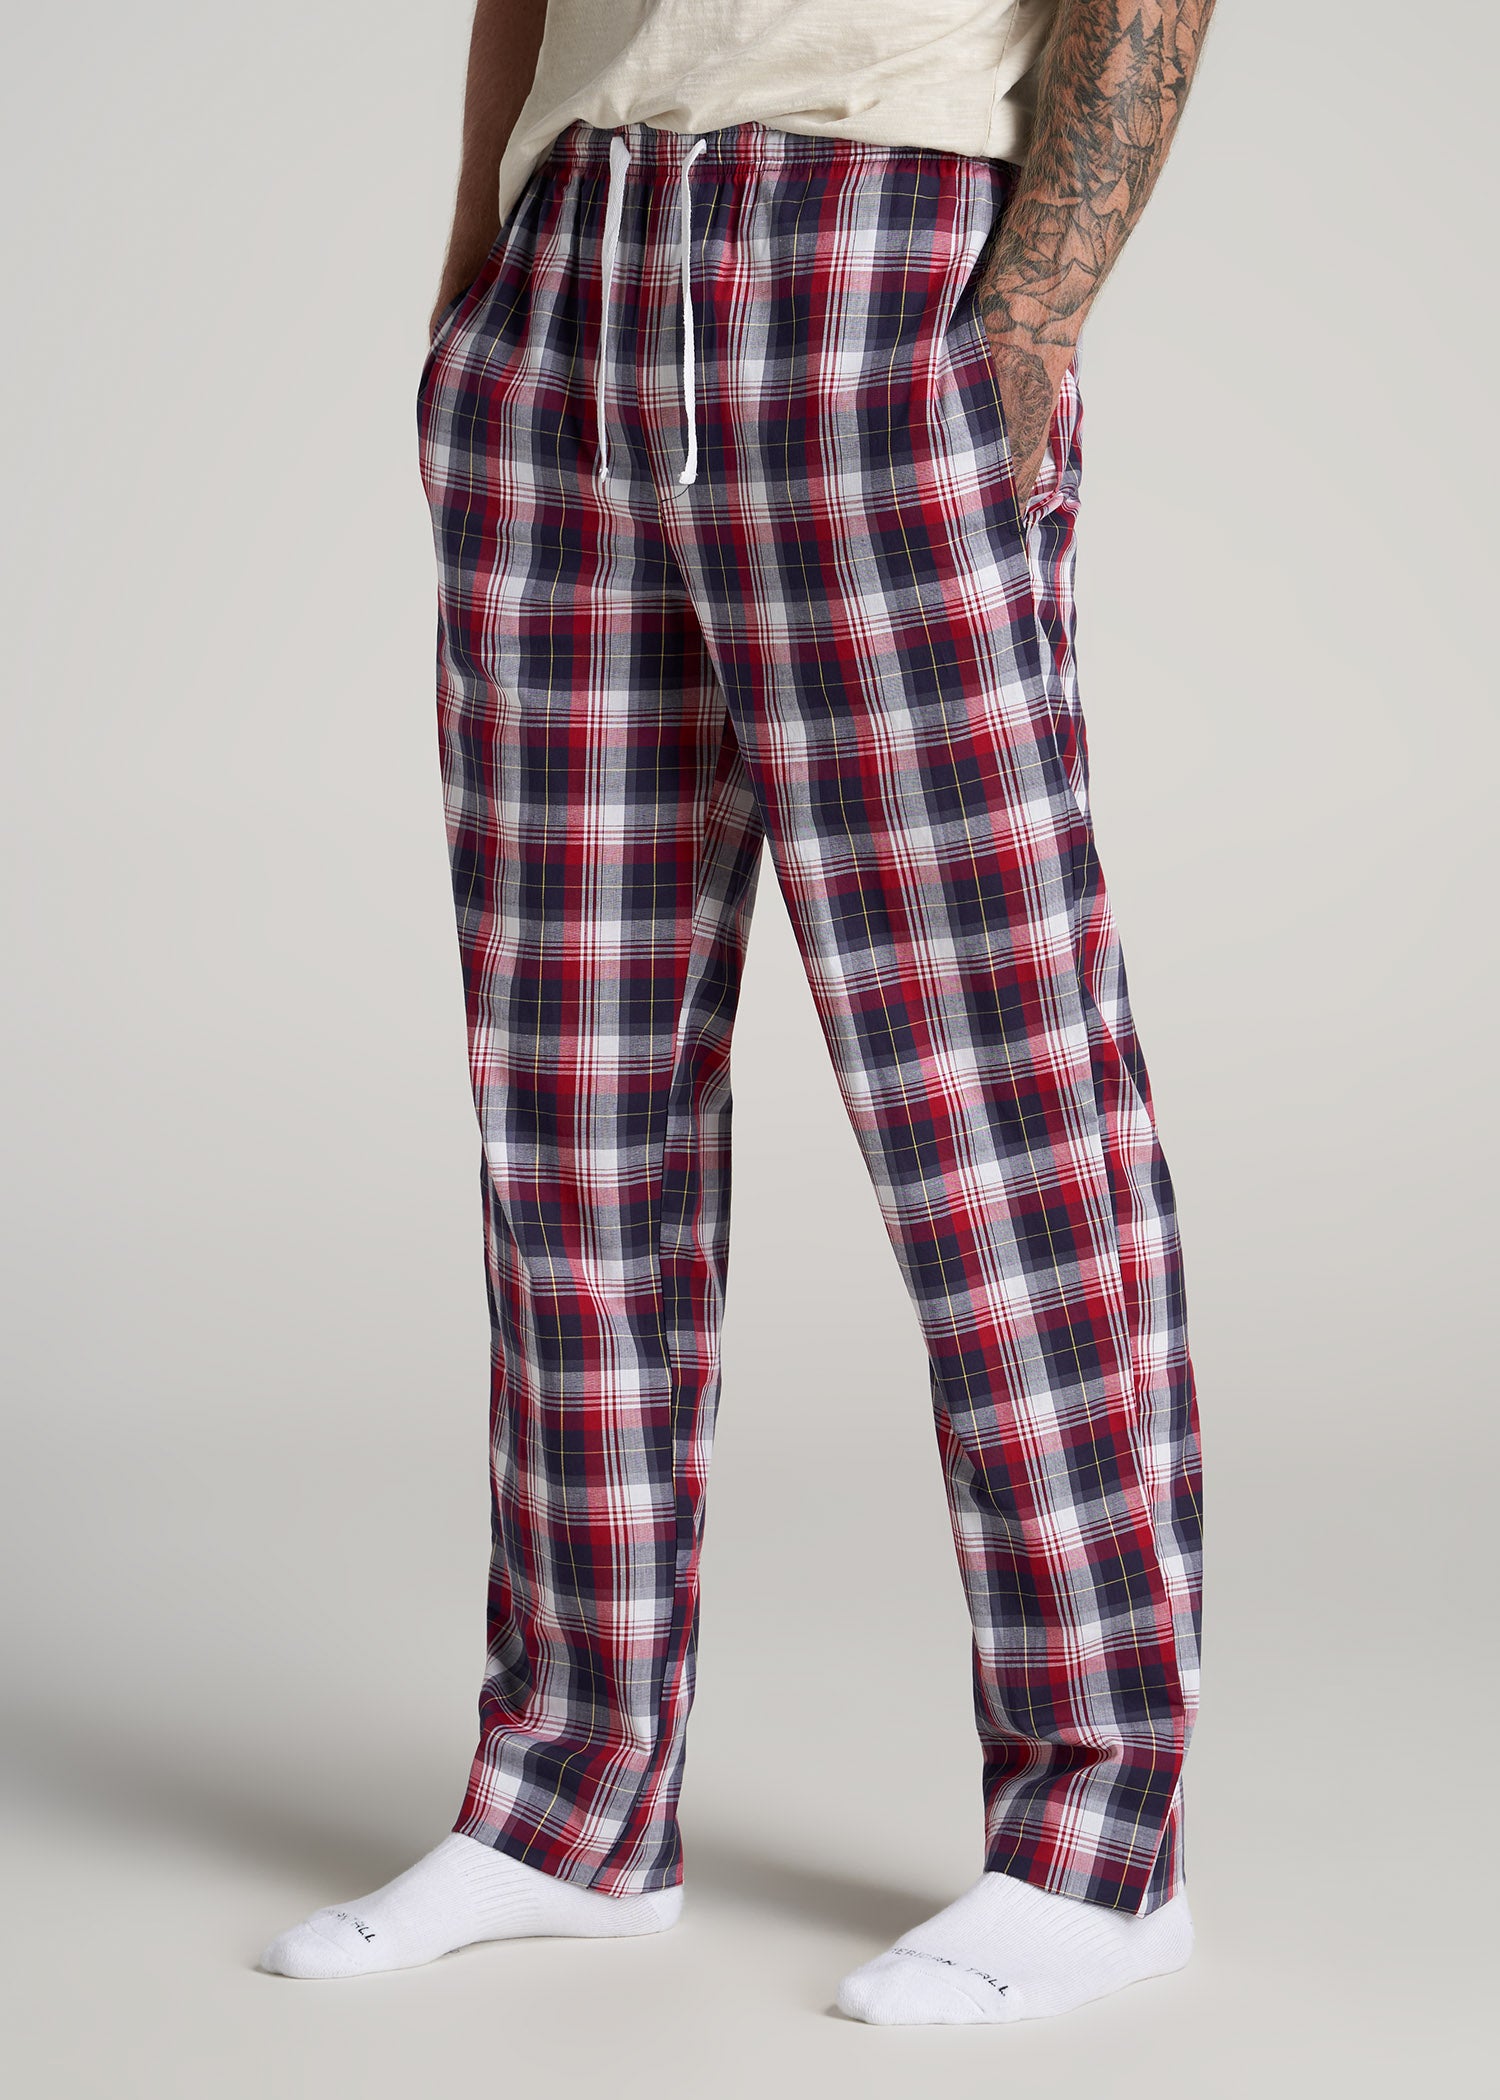 Tall Womens Pajamas -  Canada